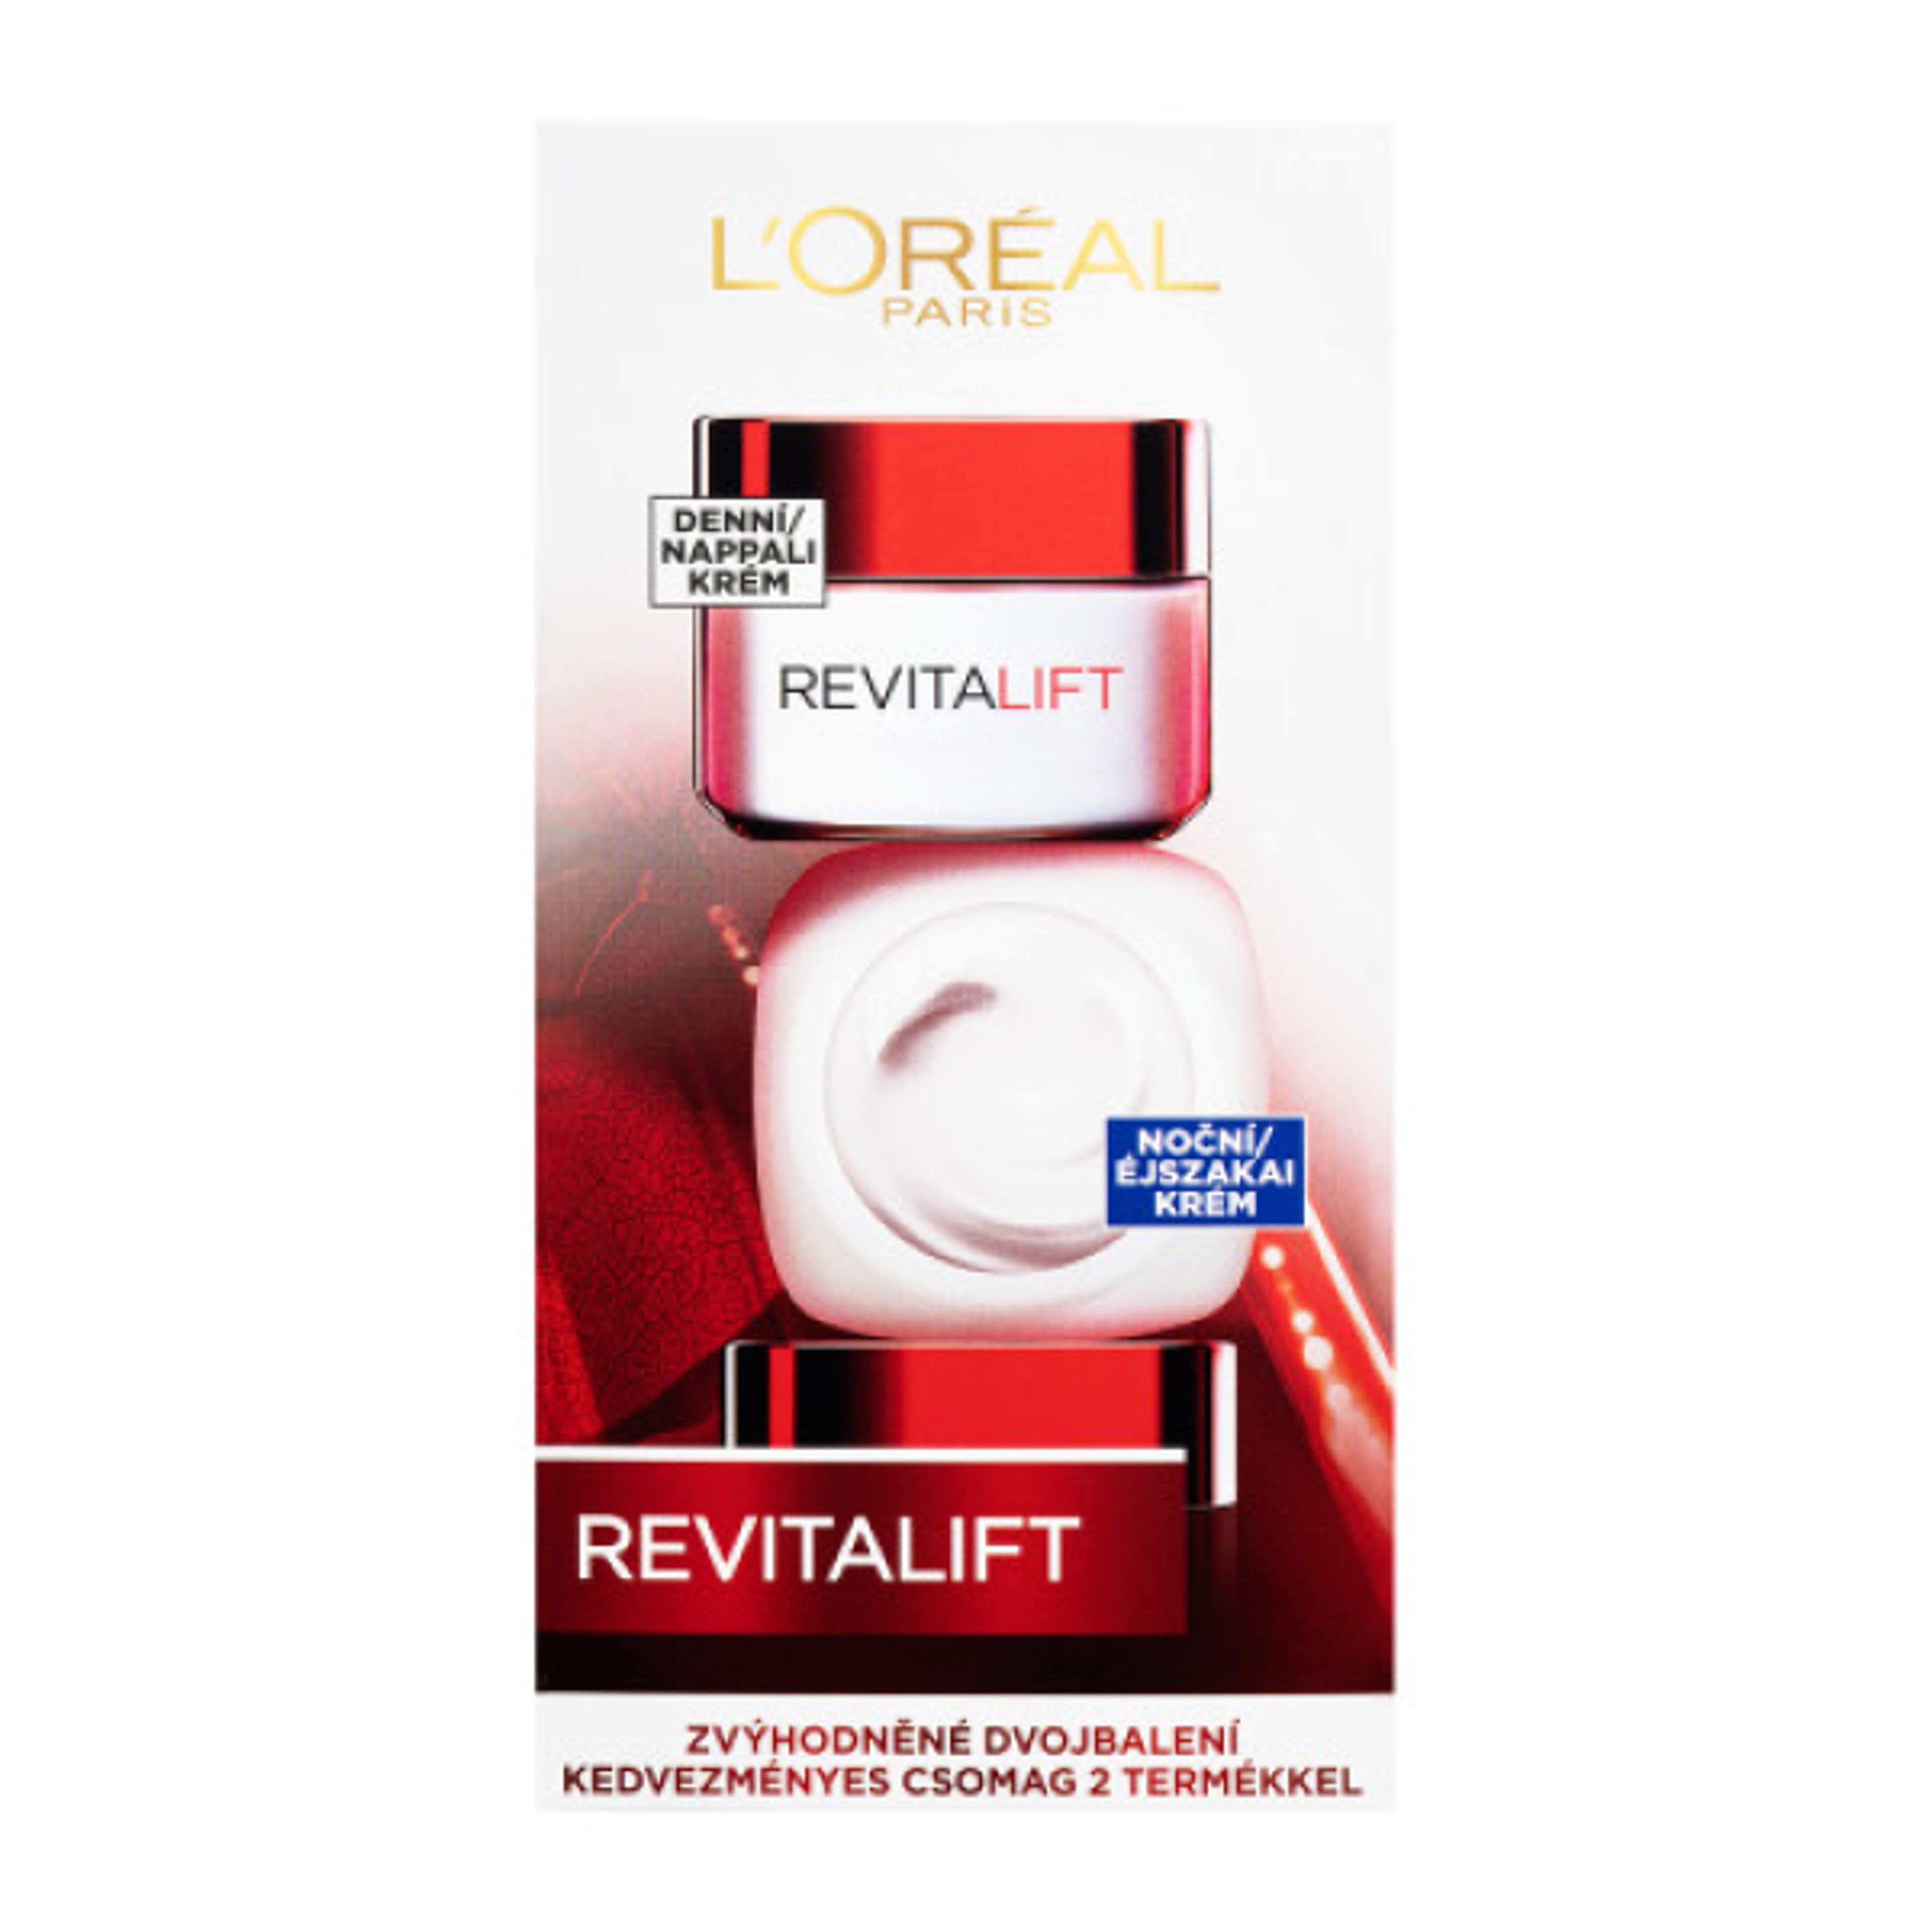 L'Oréal Paris Revitalift nappali és éjszakai krém csomag - 100 ml